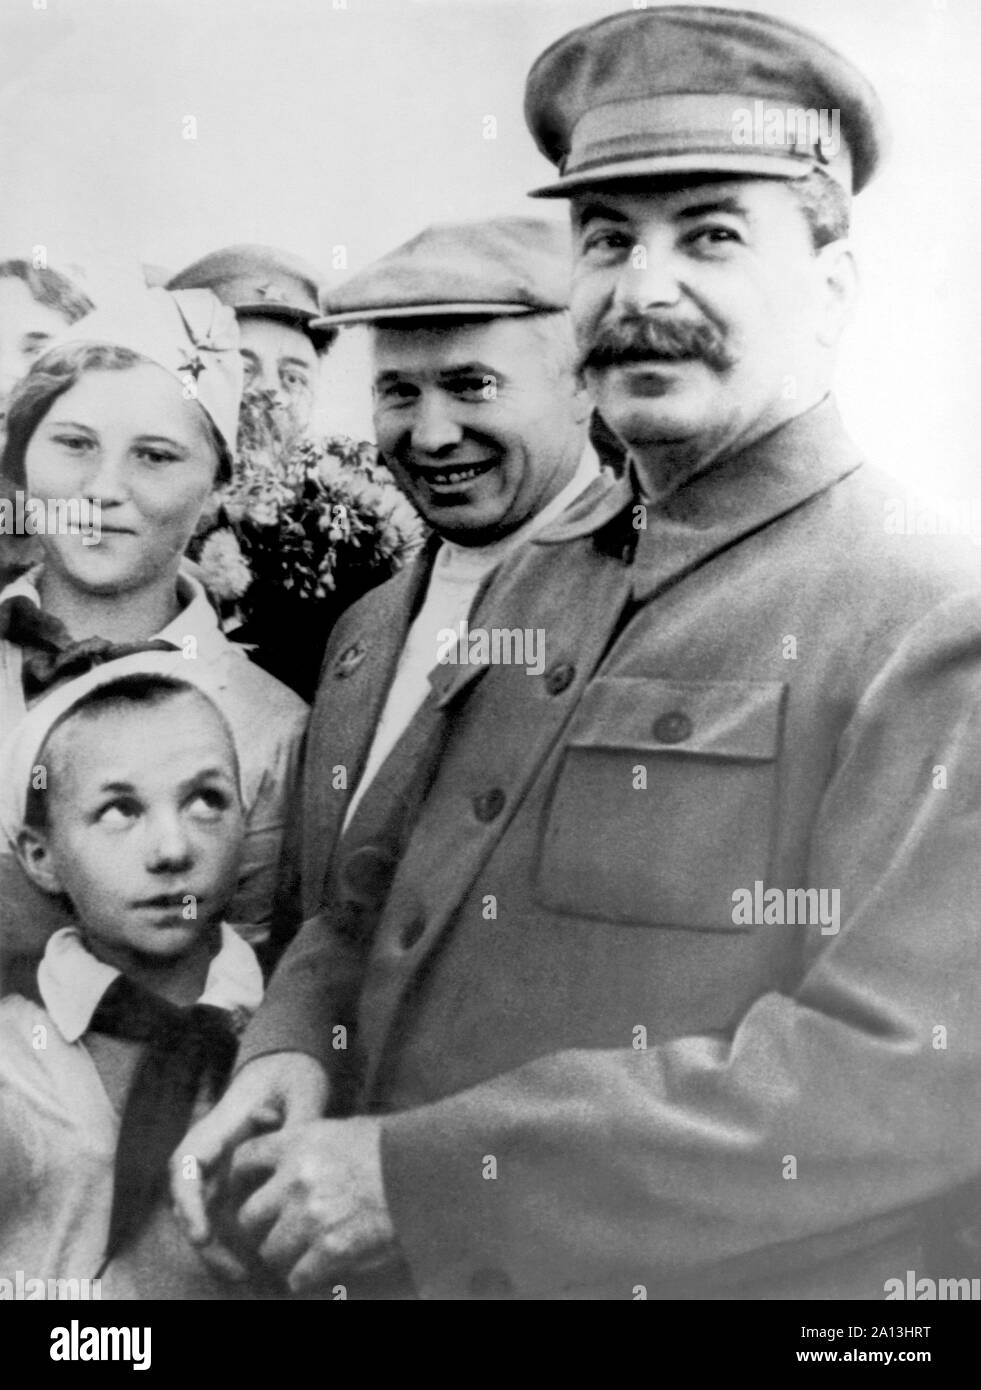 Eine ehrliche Moment mit Joseph Stalin und Nikita Chruschtschow. Stockfoto